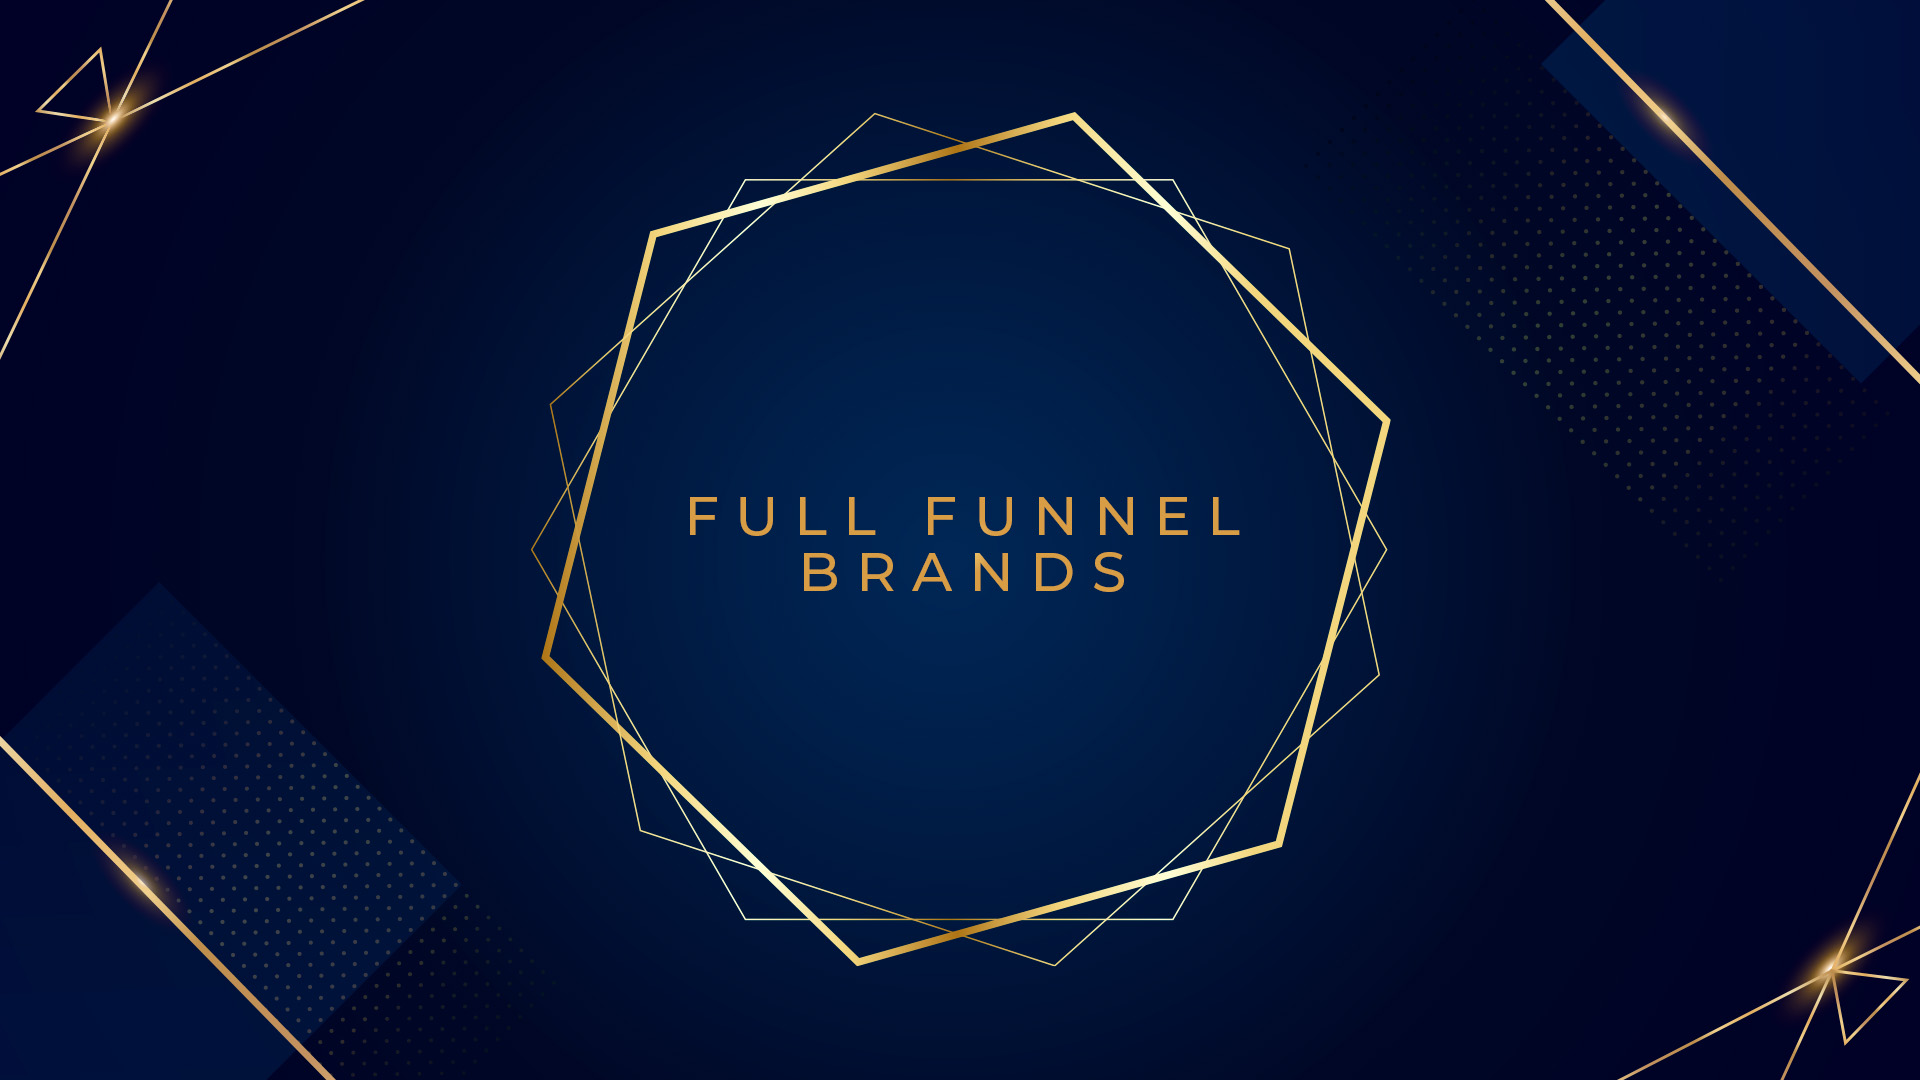 Full Funnel Brands